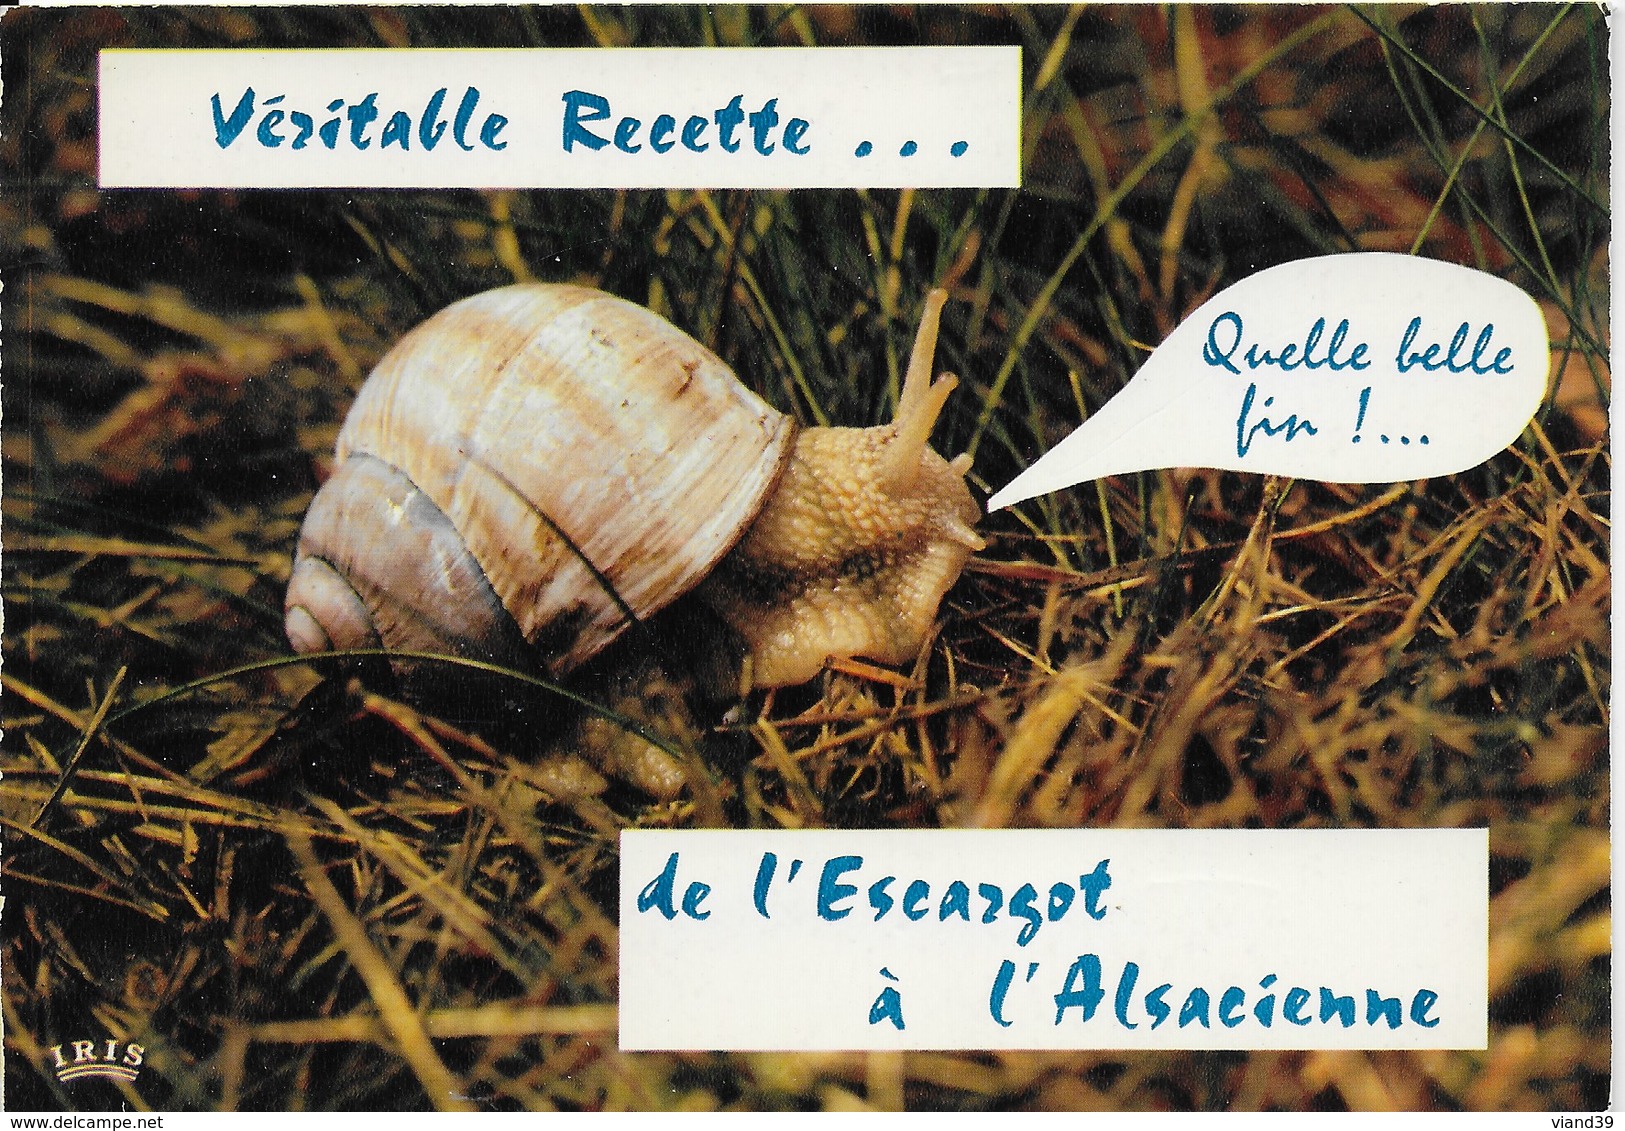 Recette escargots à l'alsacienne - Marie Claire